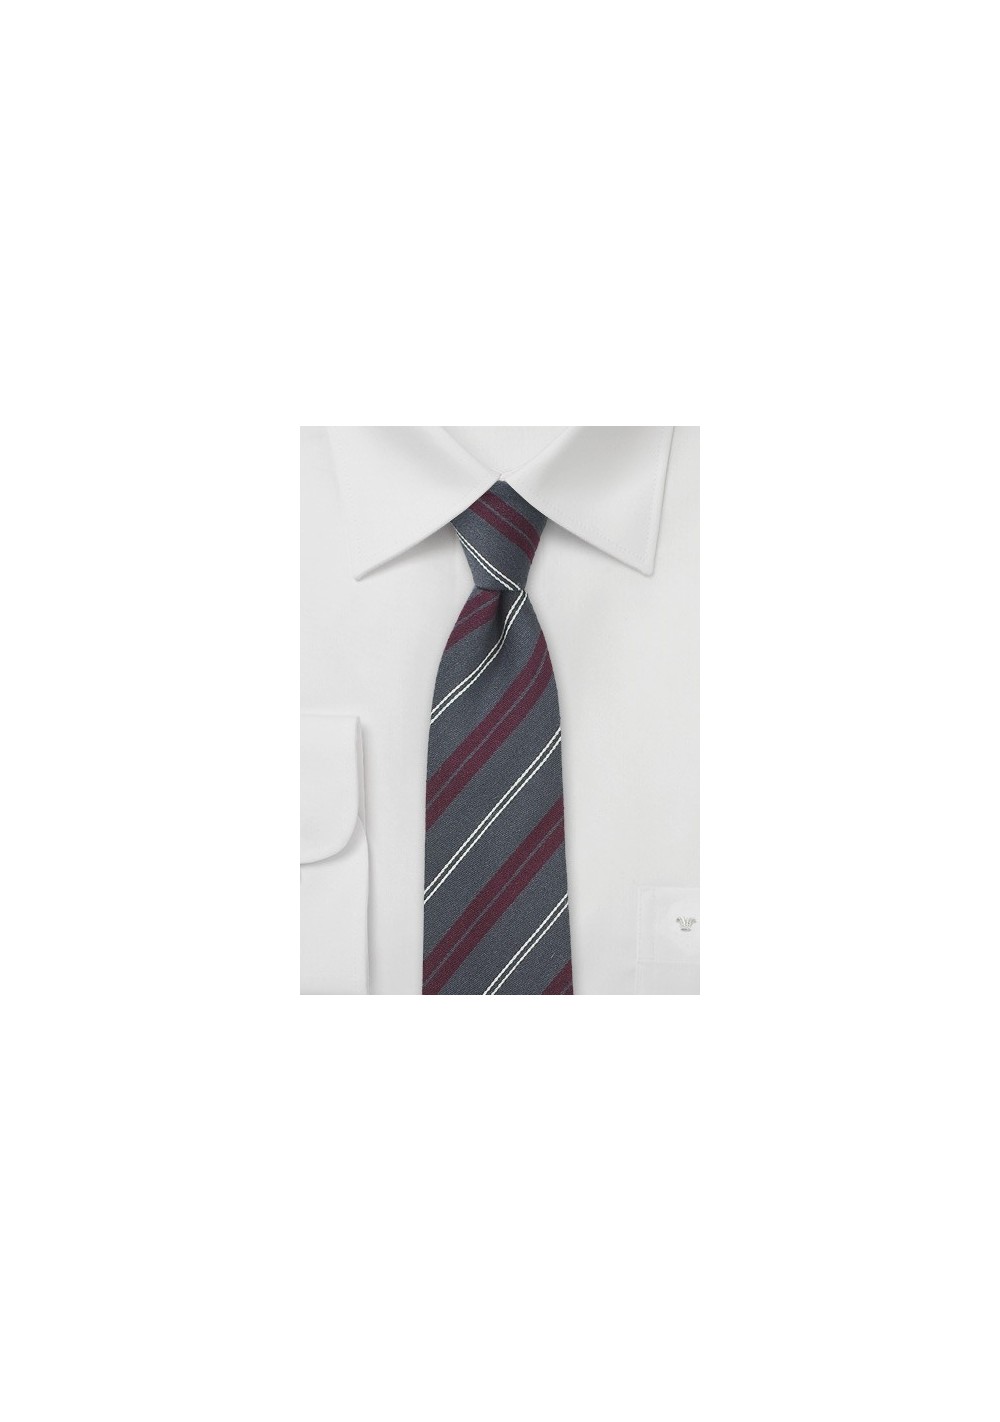 Scholar Striped Necktie Shale and Burgundy